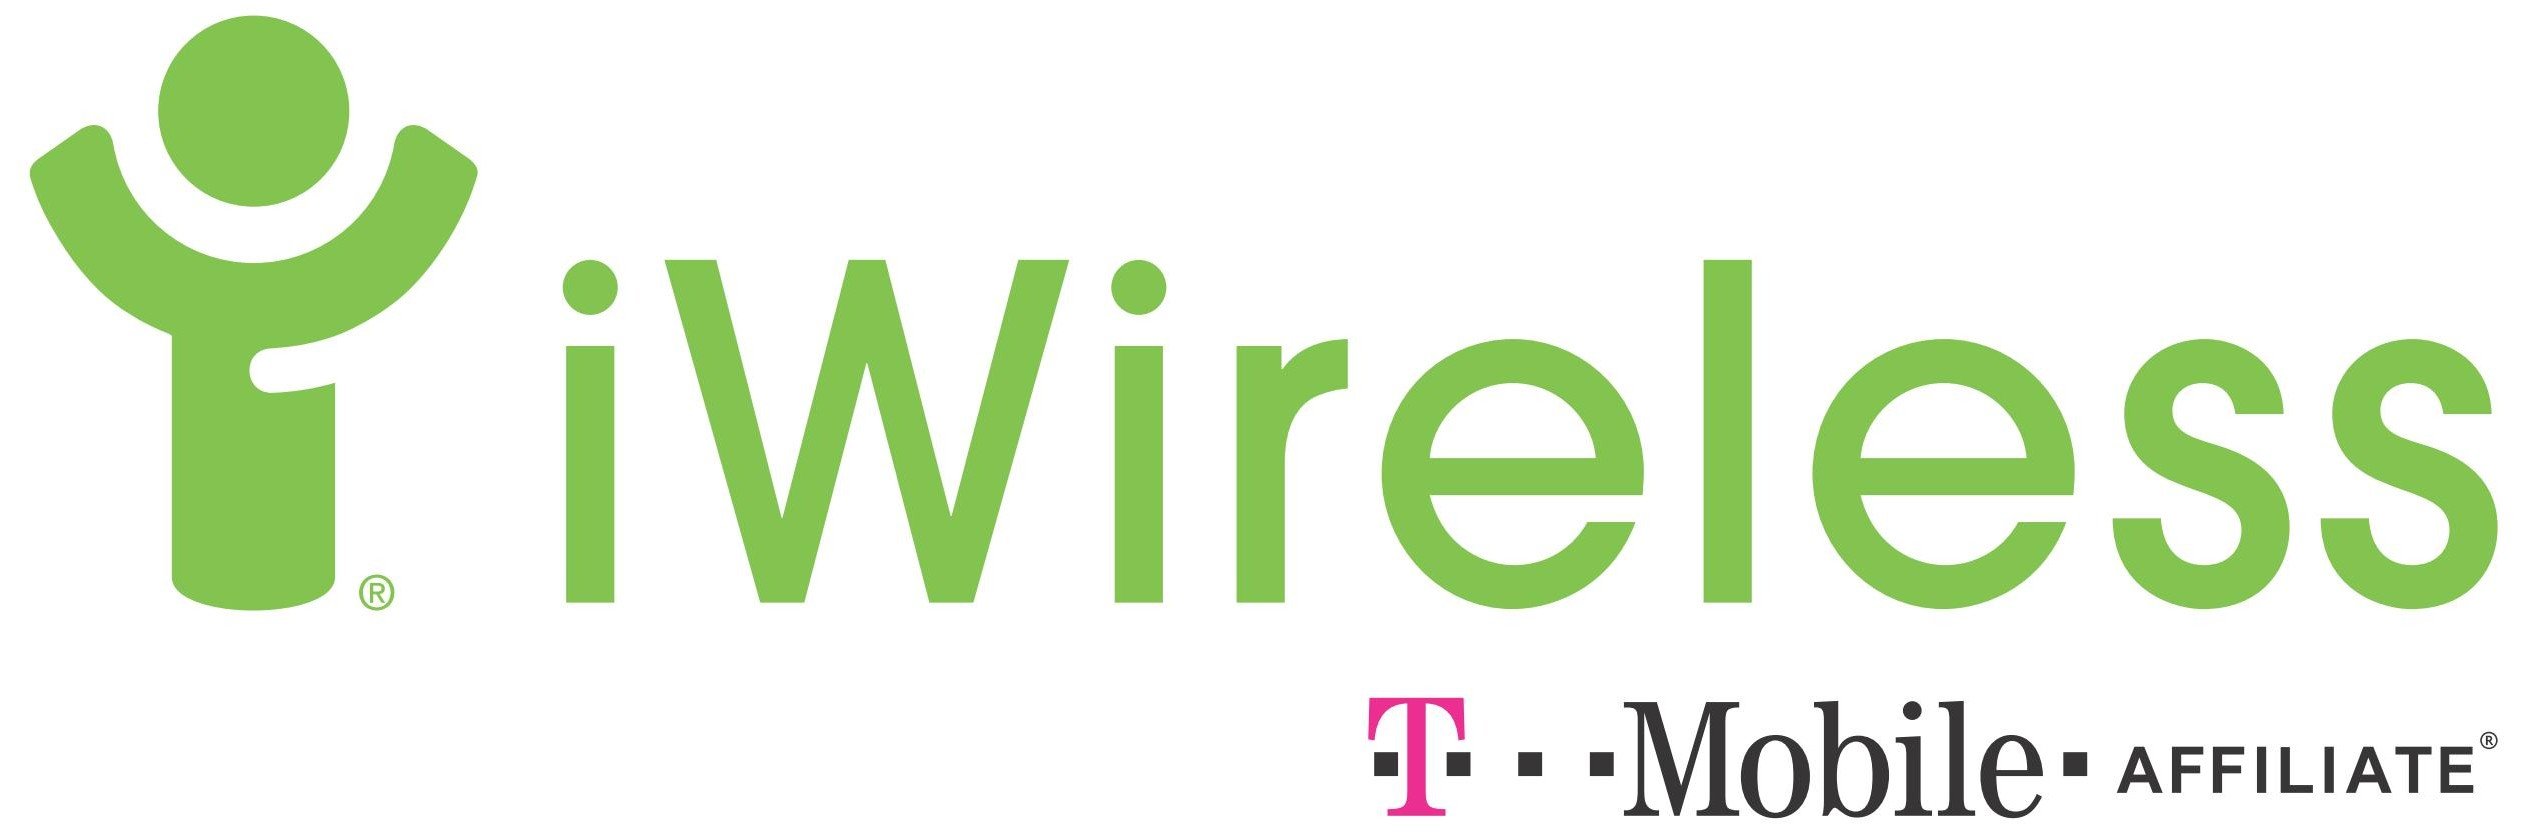 i wireless logo [EPS File]